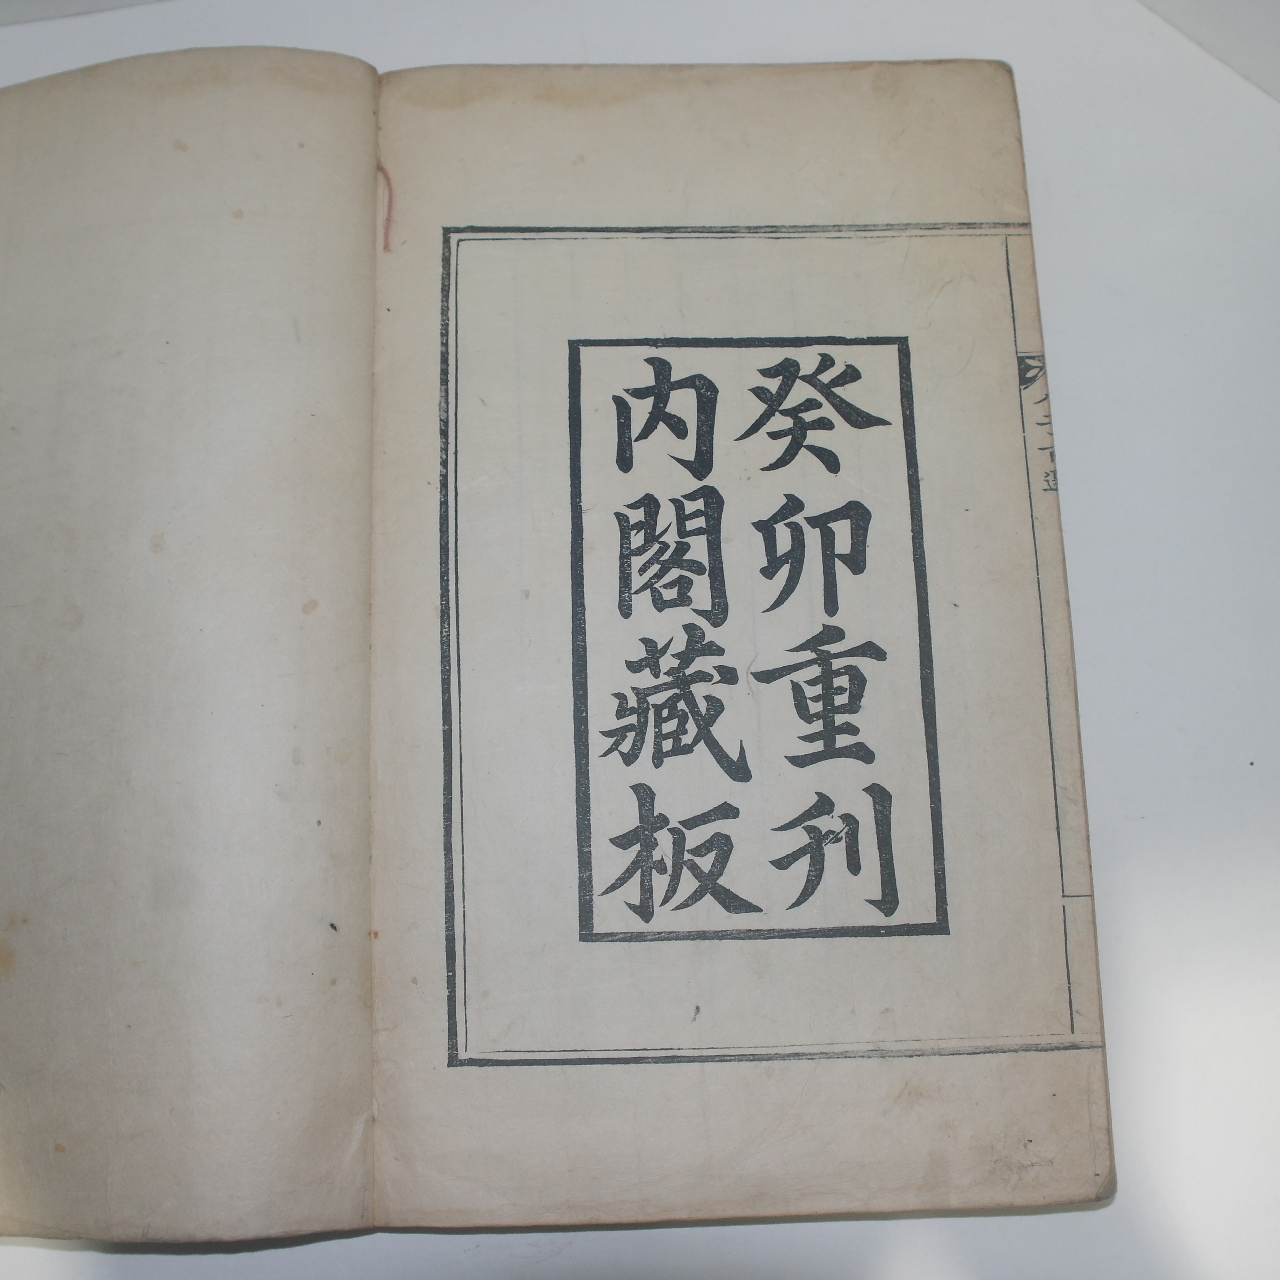 1783년 癸卯重刊內閣藏板 내사인이 있는 당송팔자백선(唐宋八子百選) 3책완질